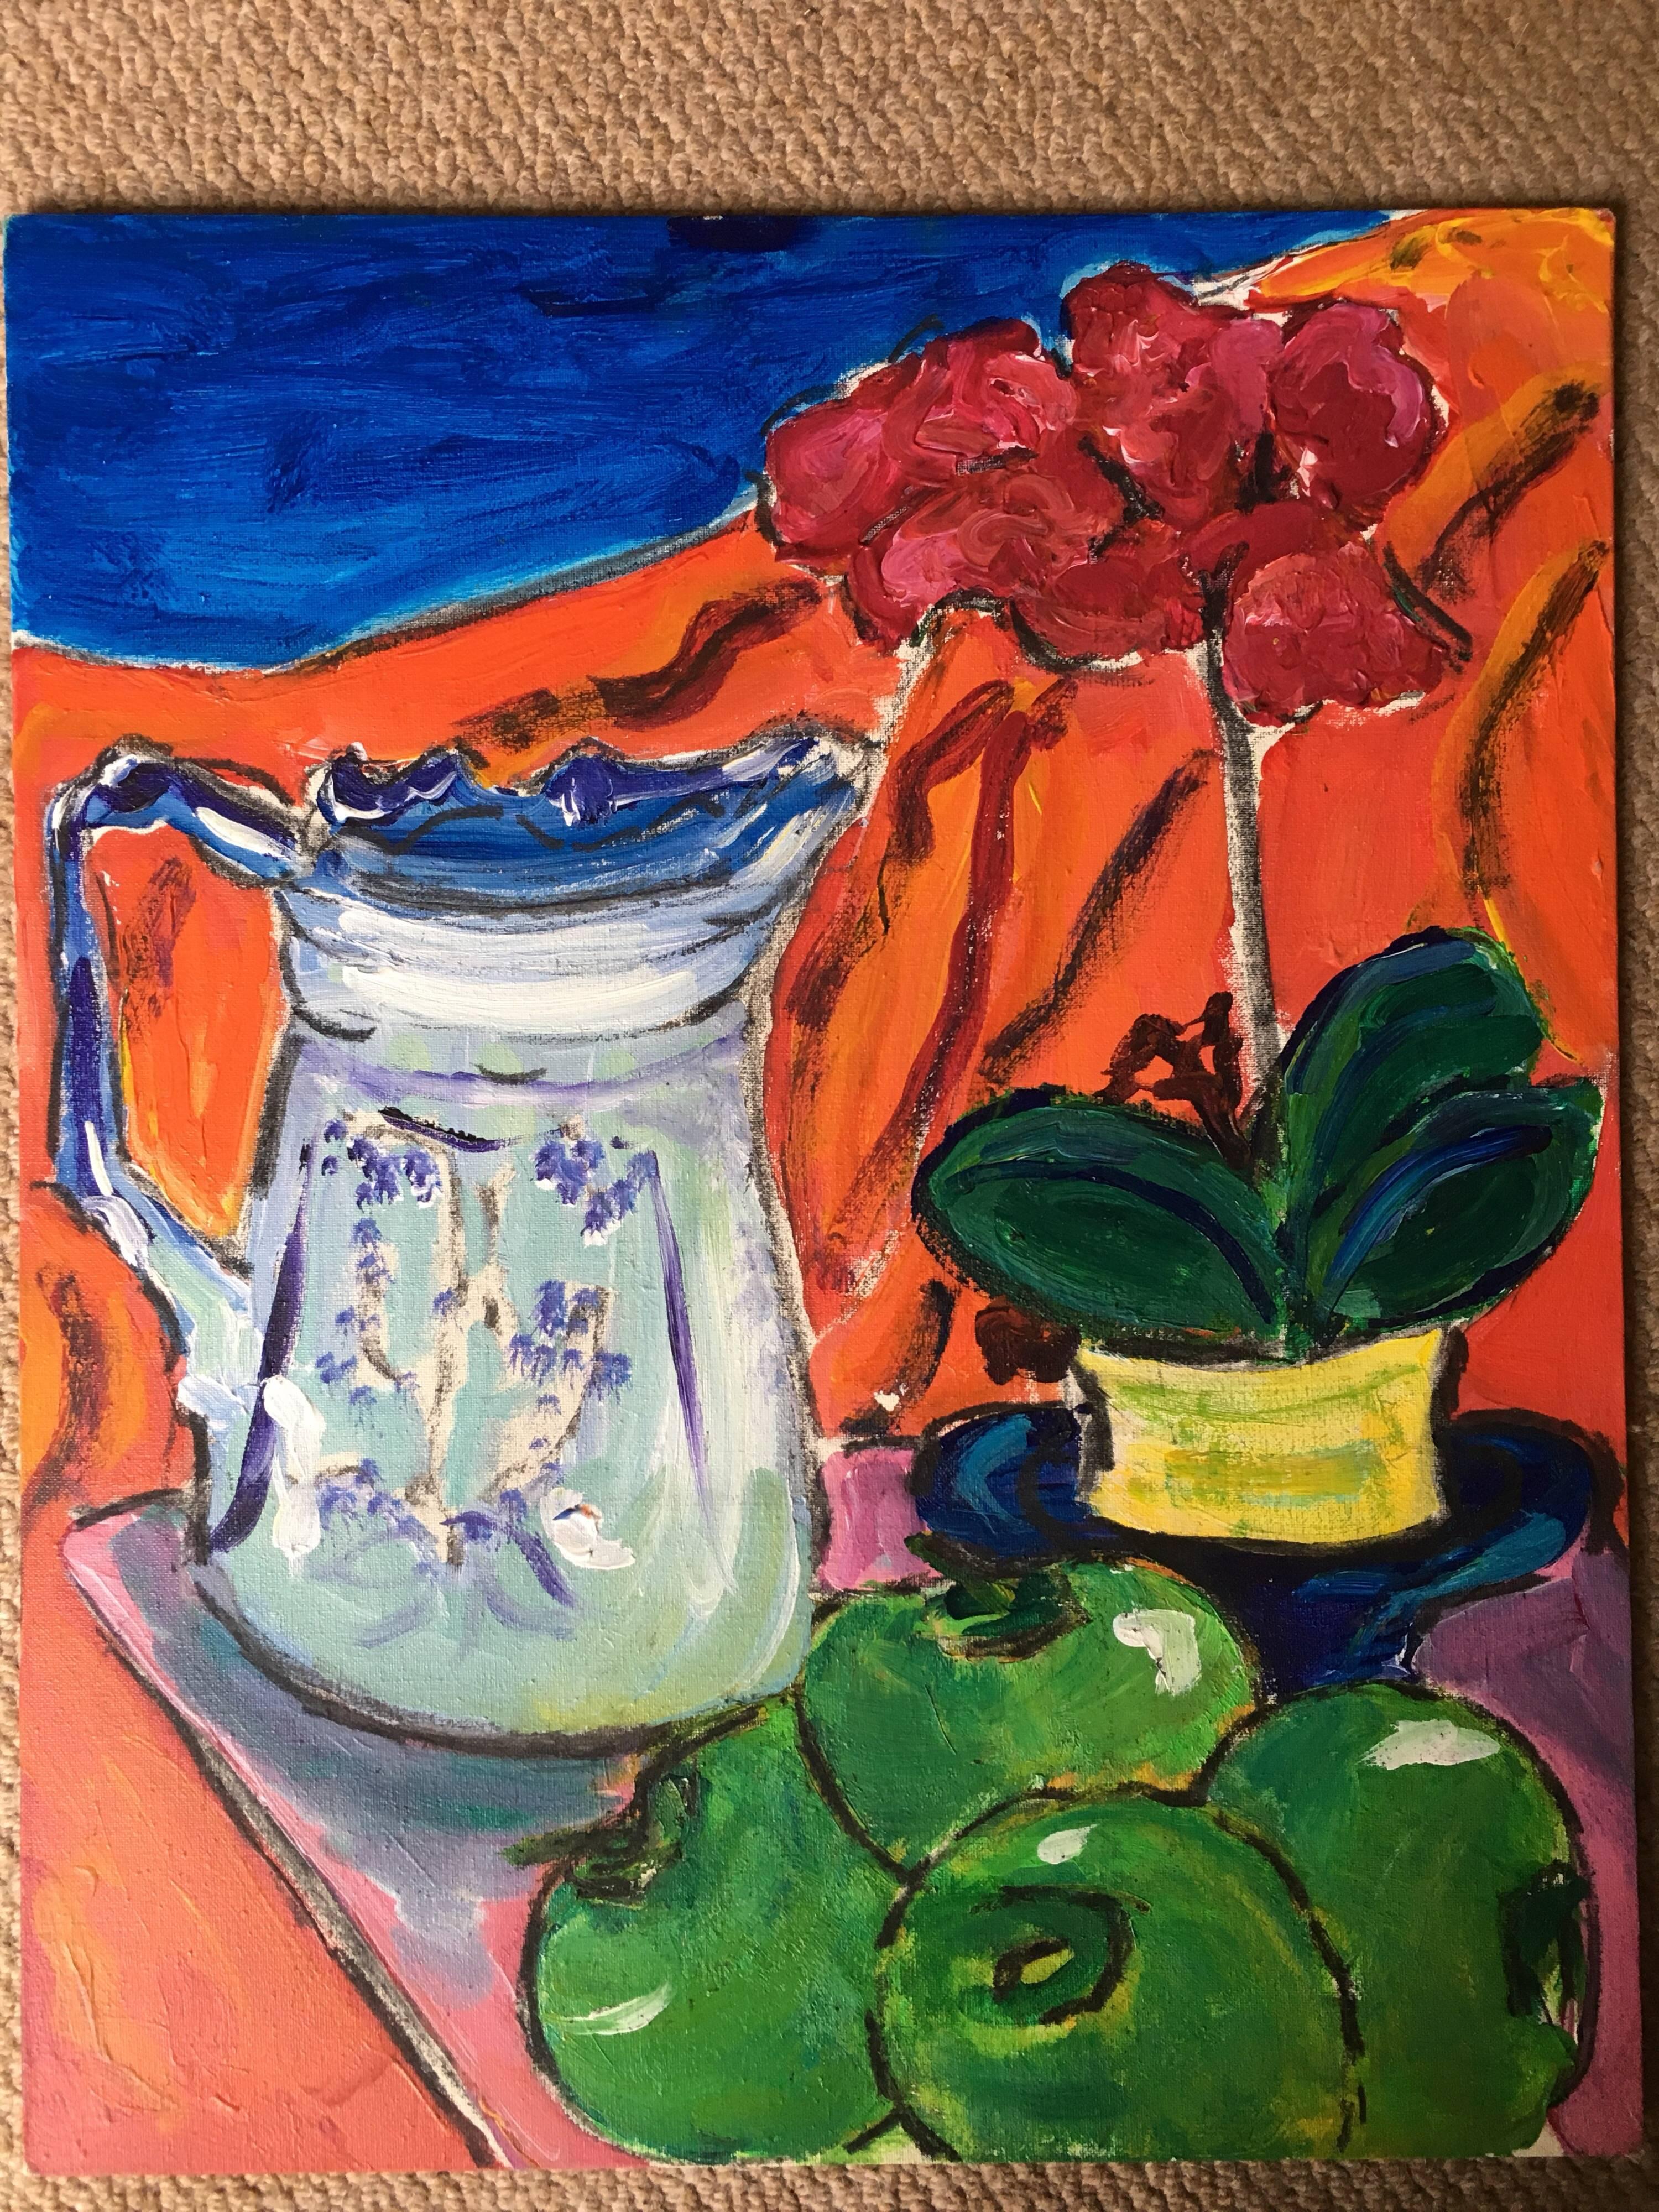 Stillleben, Obst, Blumen und klassischer Krug, farbenfrohes Ölgemälde (Impressionismus), Painting, von Pamela Cawley